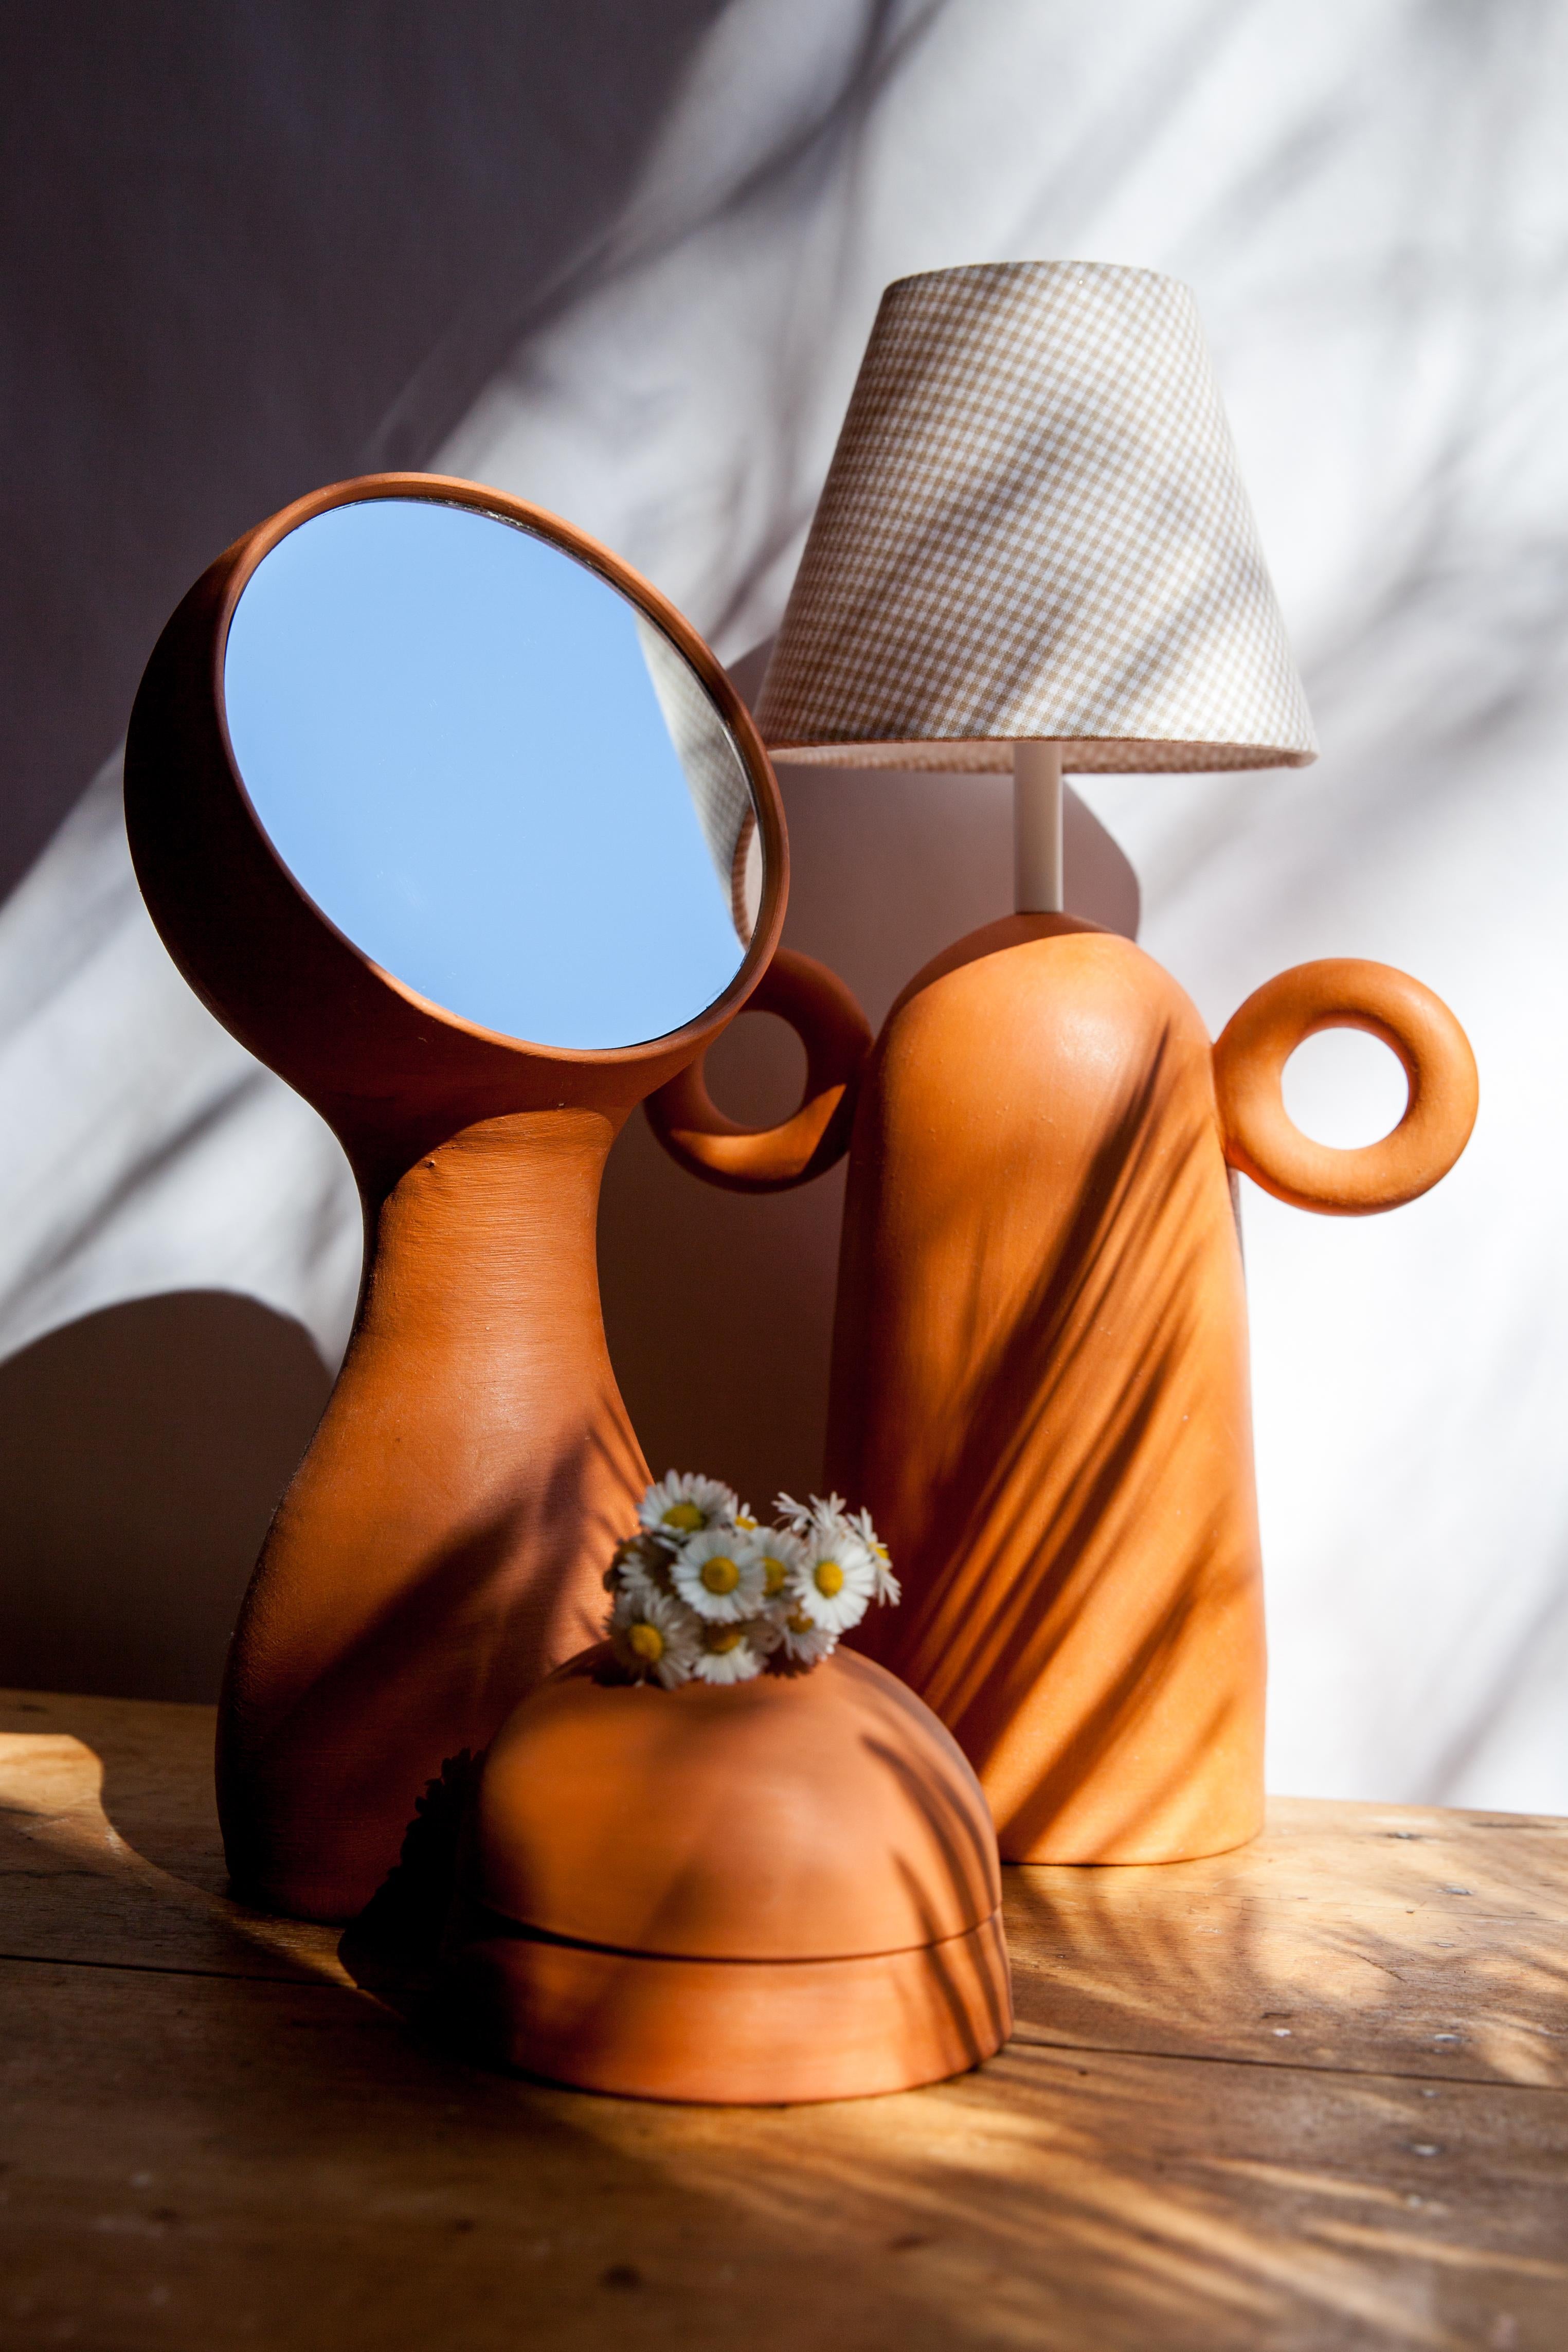 Earthenware Ears Mirror by Lola Mayeras